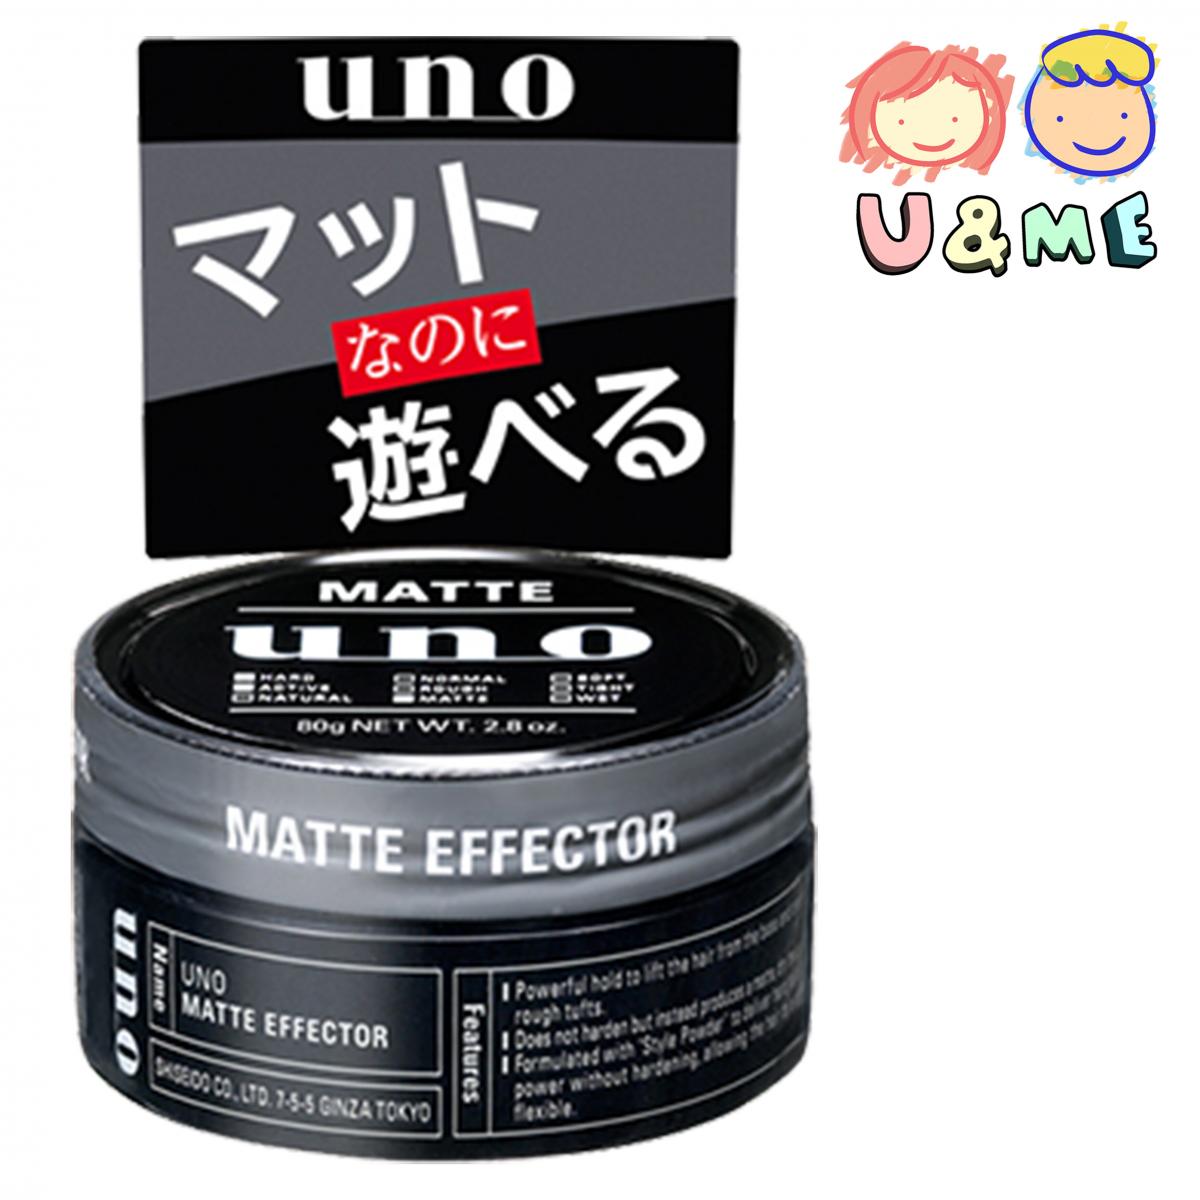 UNO 立體造型定型髮蠟 80g (平行進口貨）